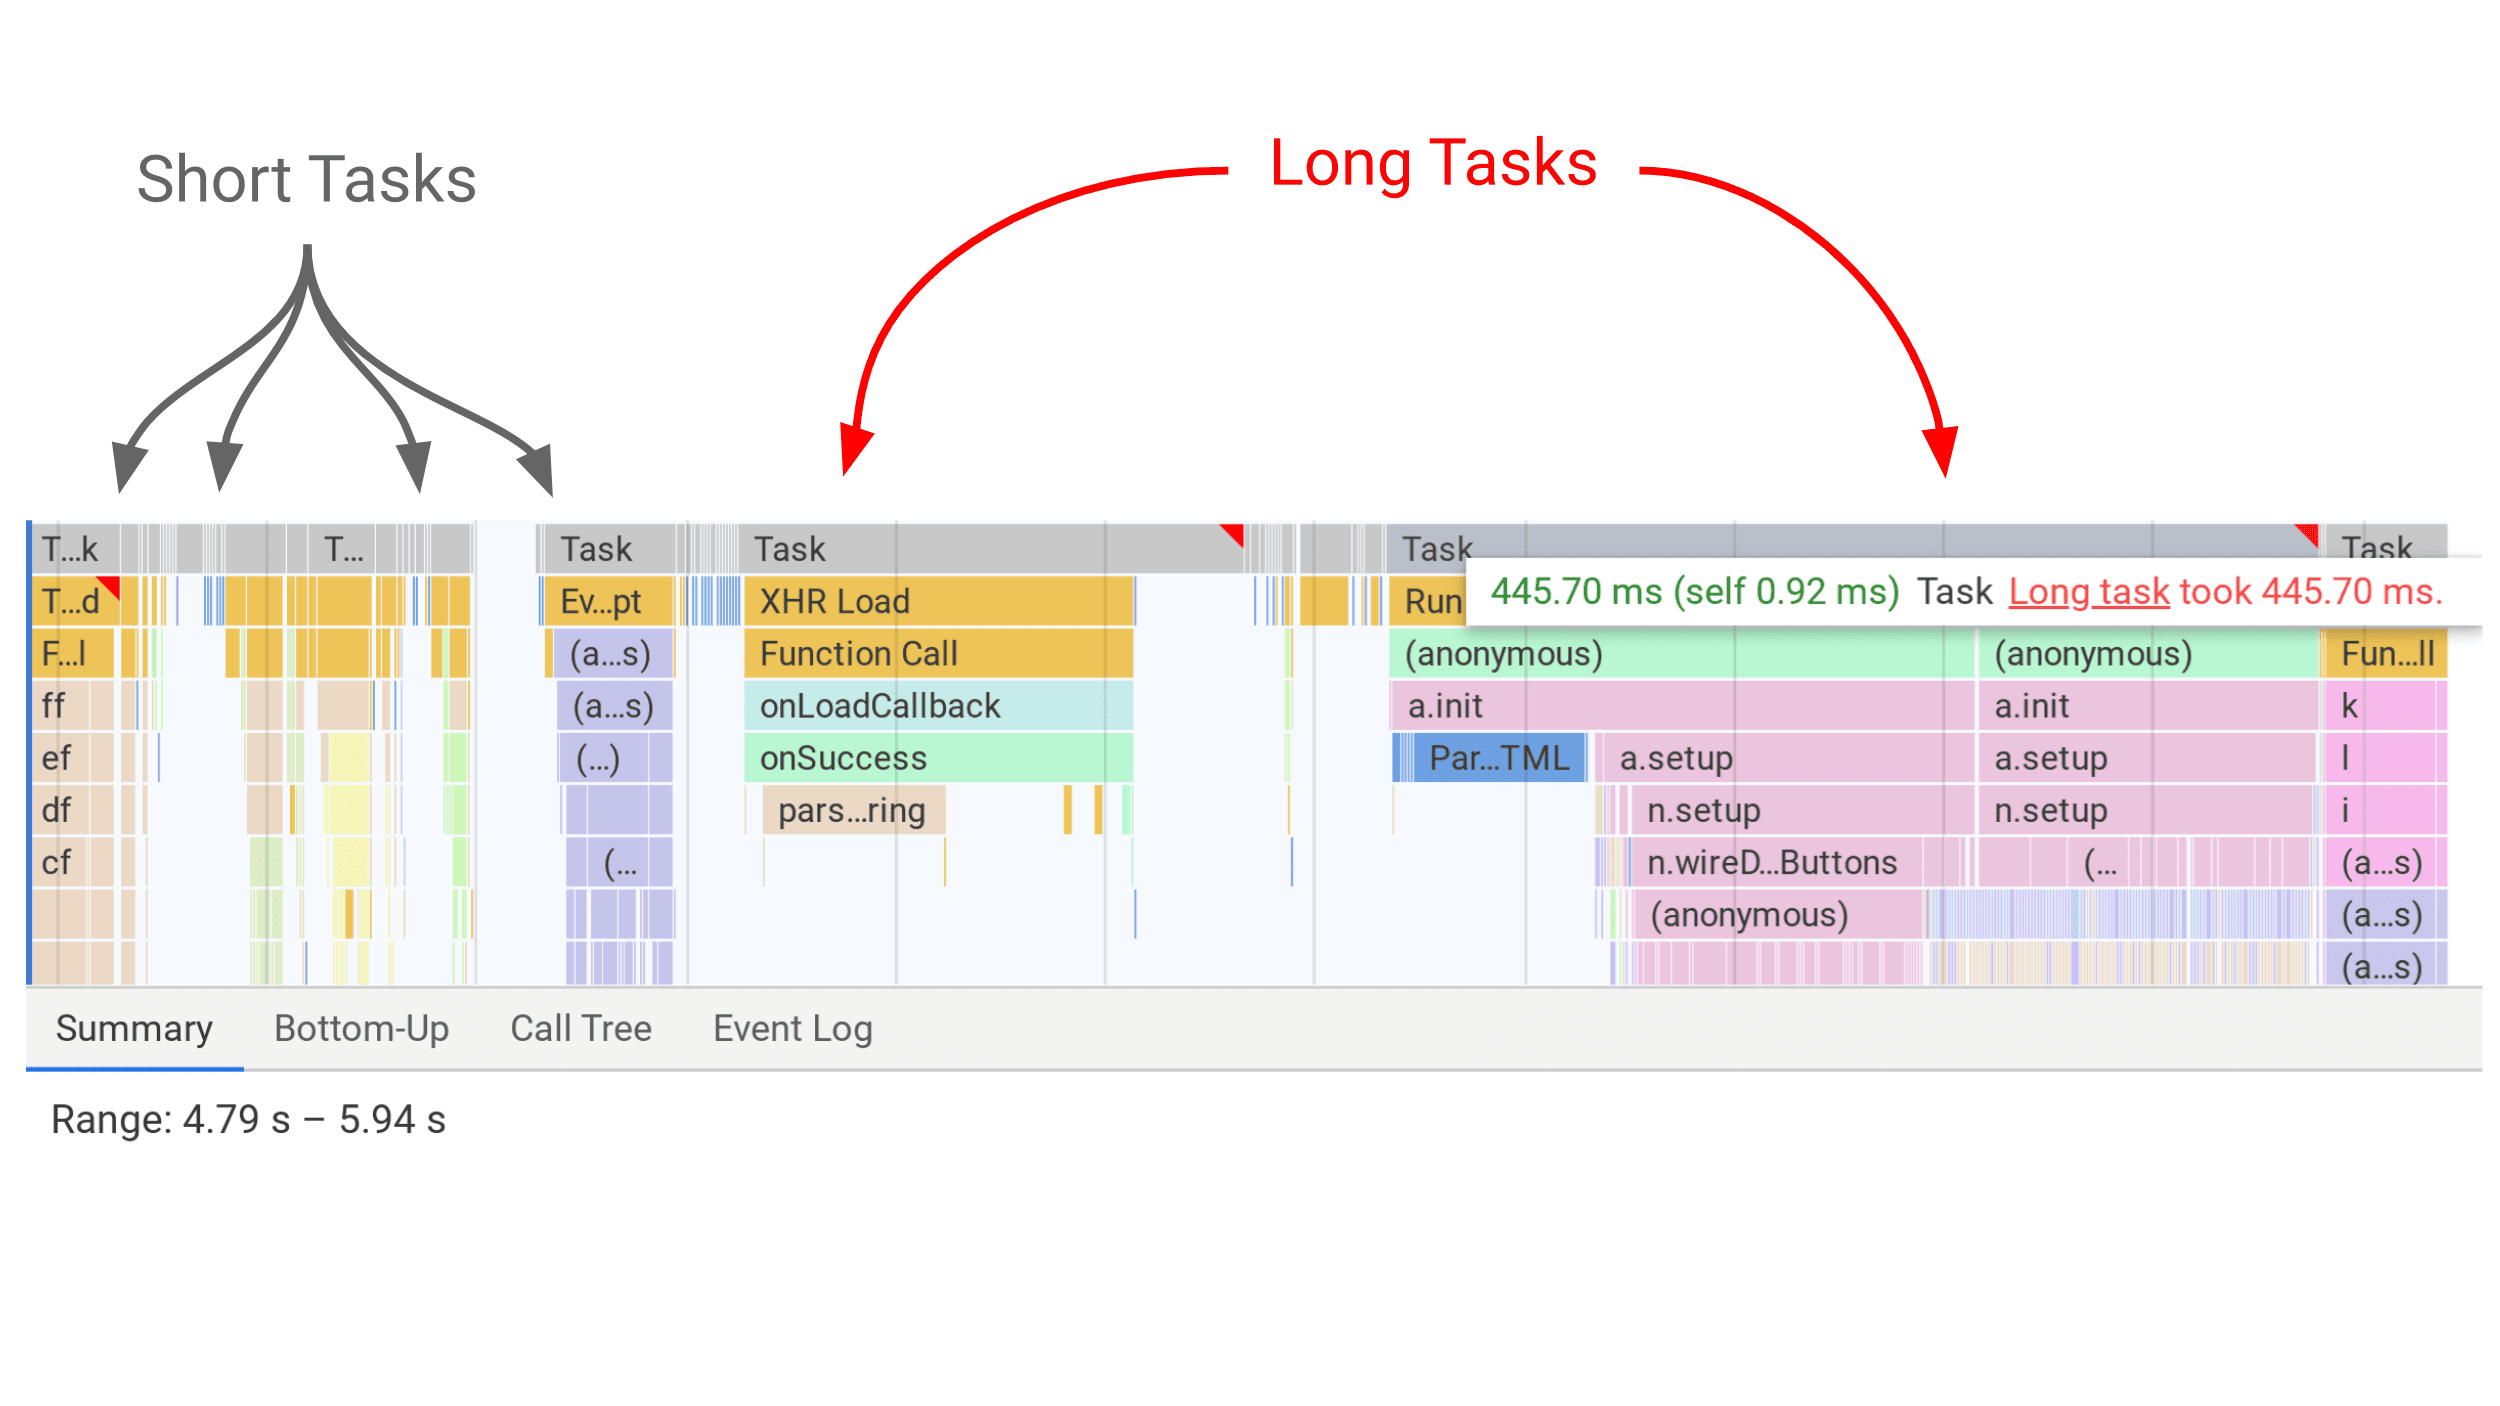 DevTools, परफ़ॉर्मेंस पैनल में लंबे टास्क को स्लेटी रंग के बार के तौर पर दिखाता है. साथ ही, इसमें लंबे टास्क के लिए लाल रंग का फ़्लैग दिखता है